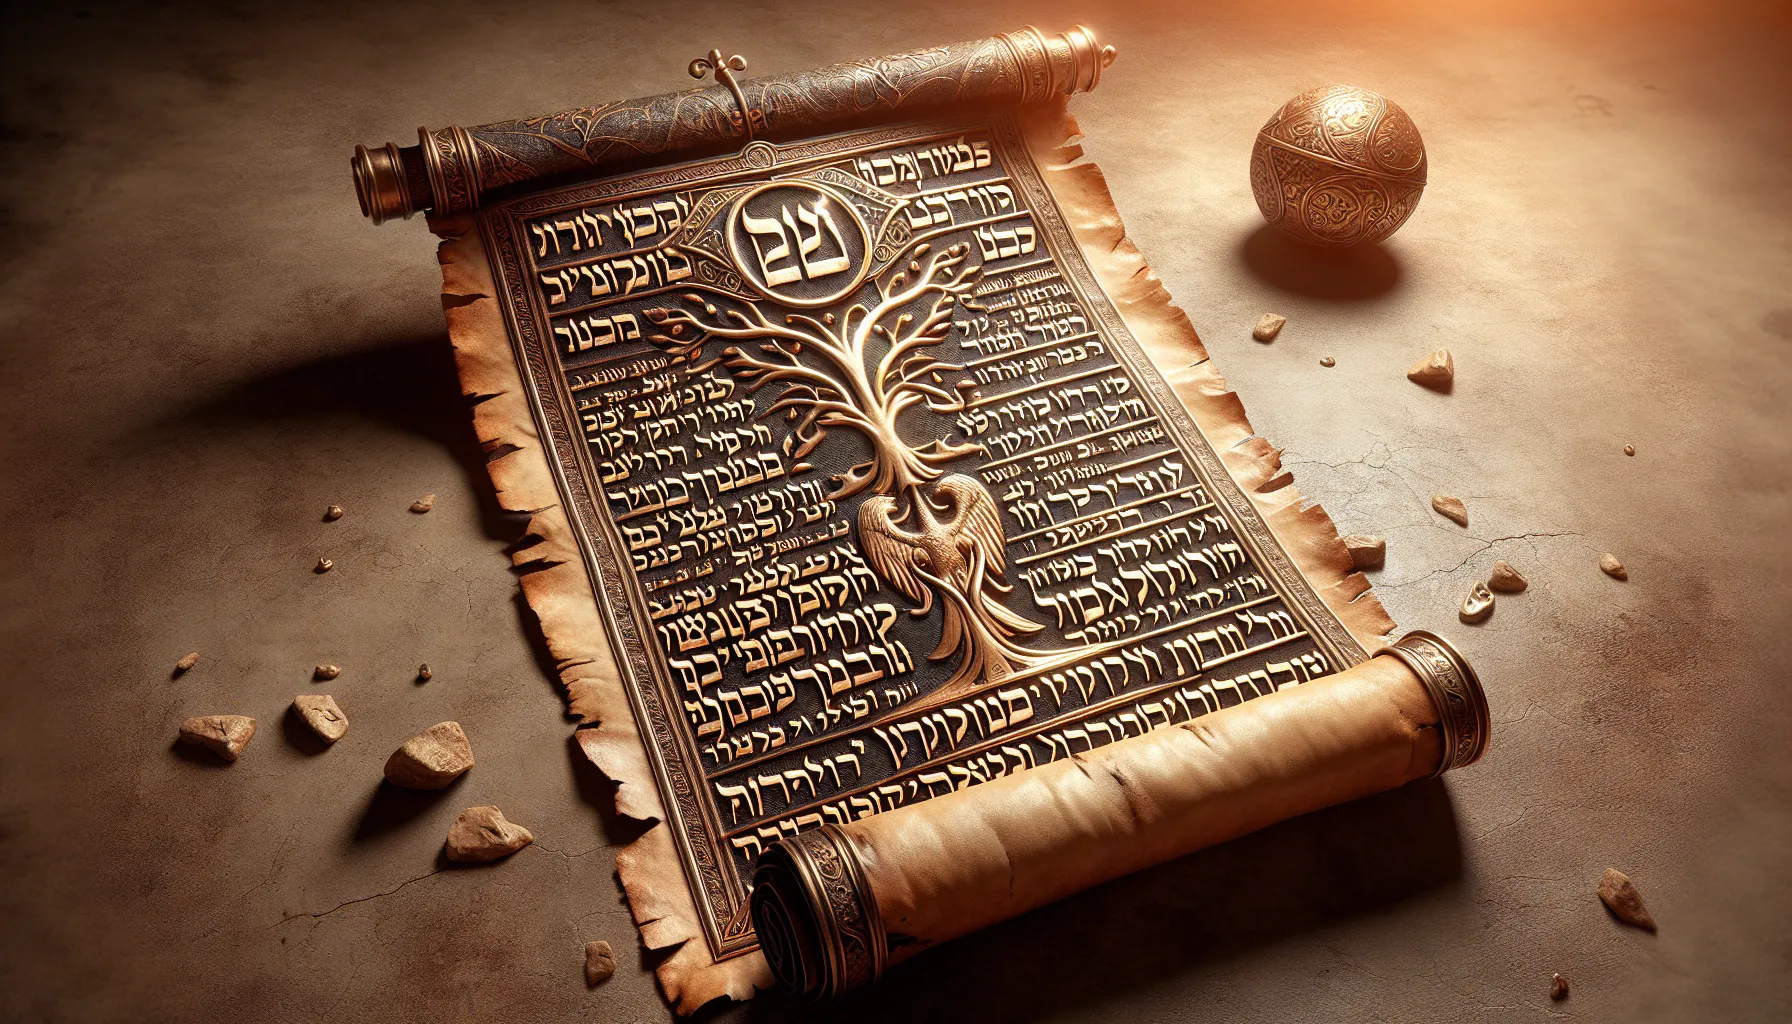 Imagen de un pergamino antiguo con letras hebreas, representando el mensaje profético sobre la justicia divina en el Libro de Abdías.